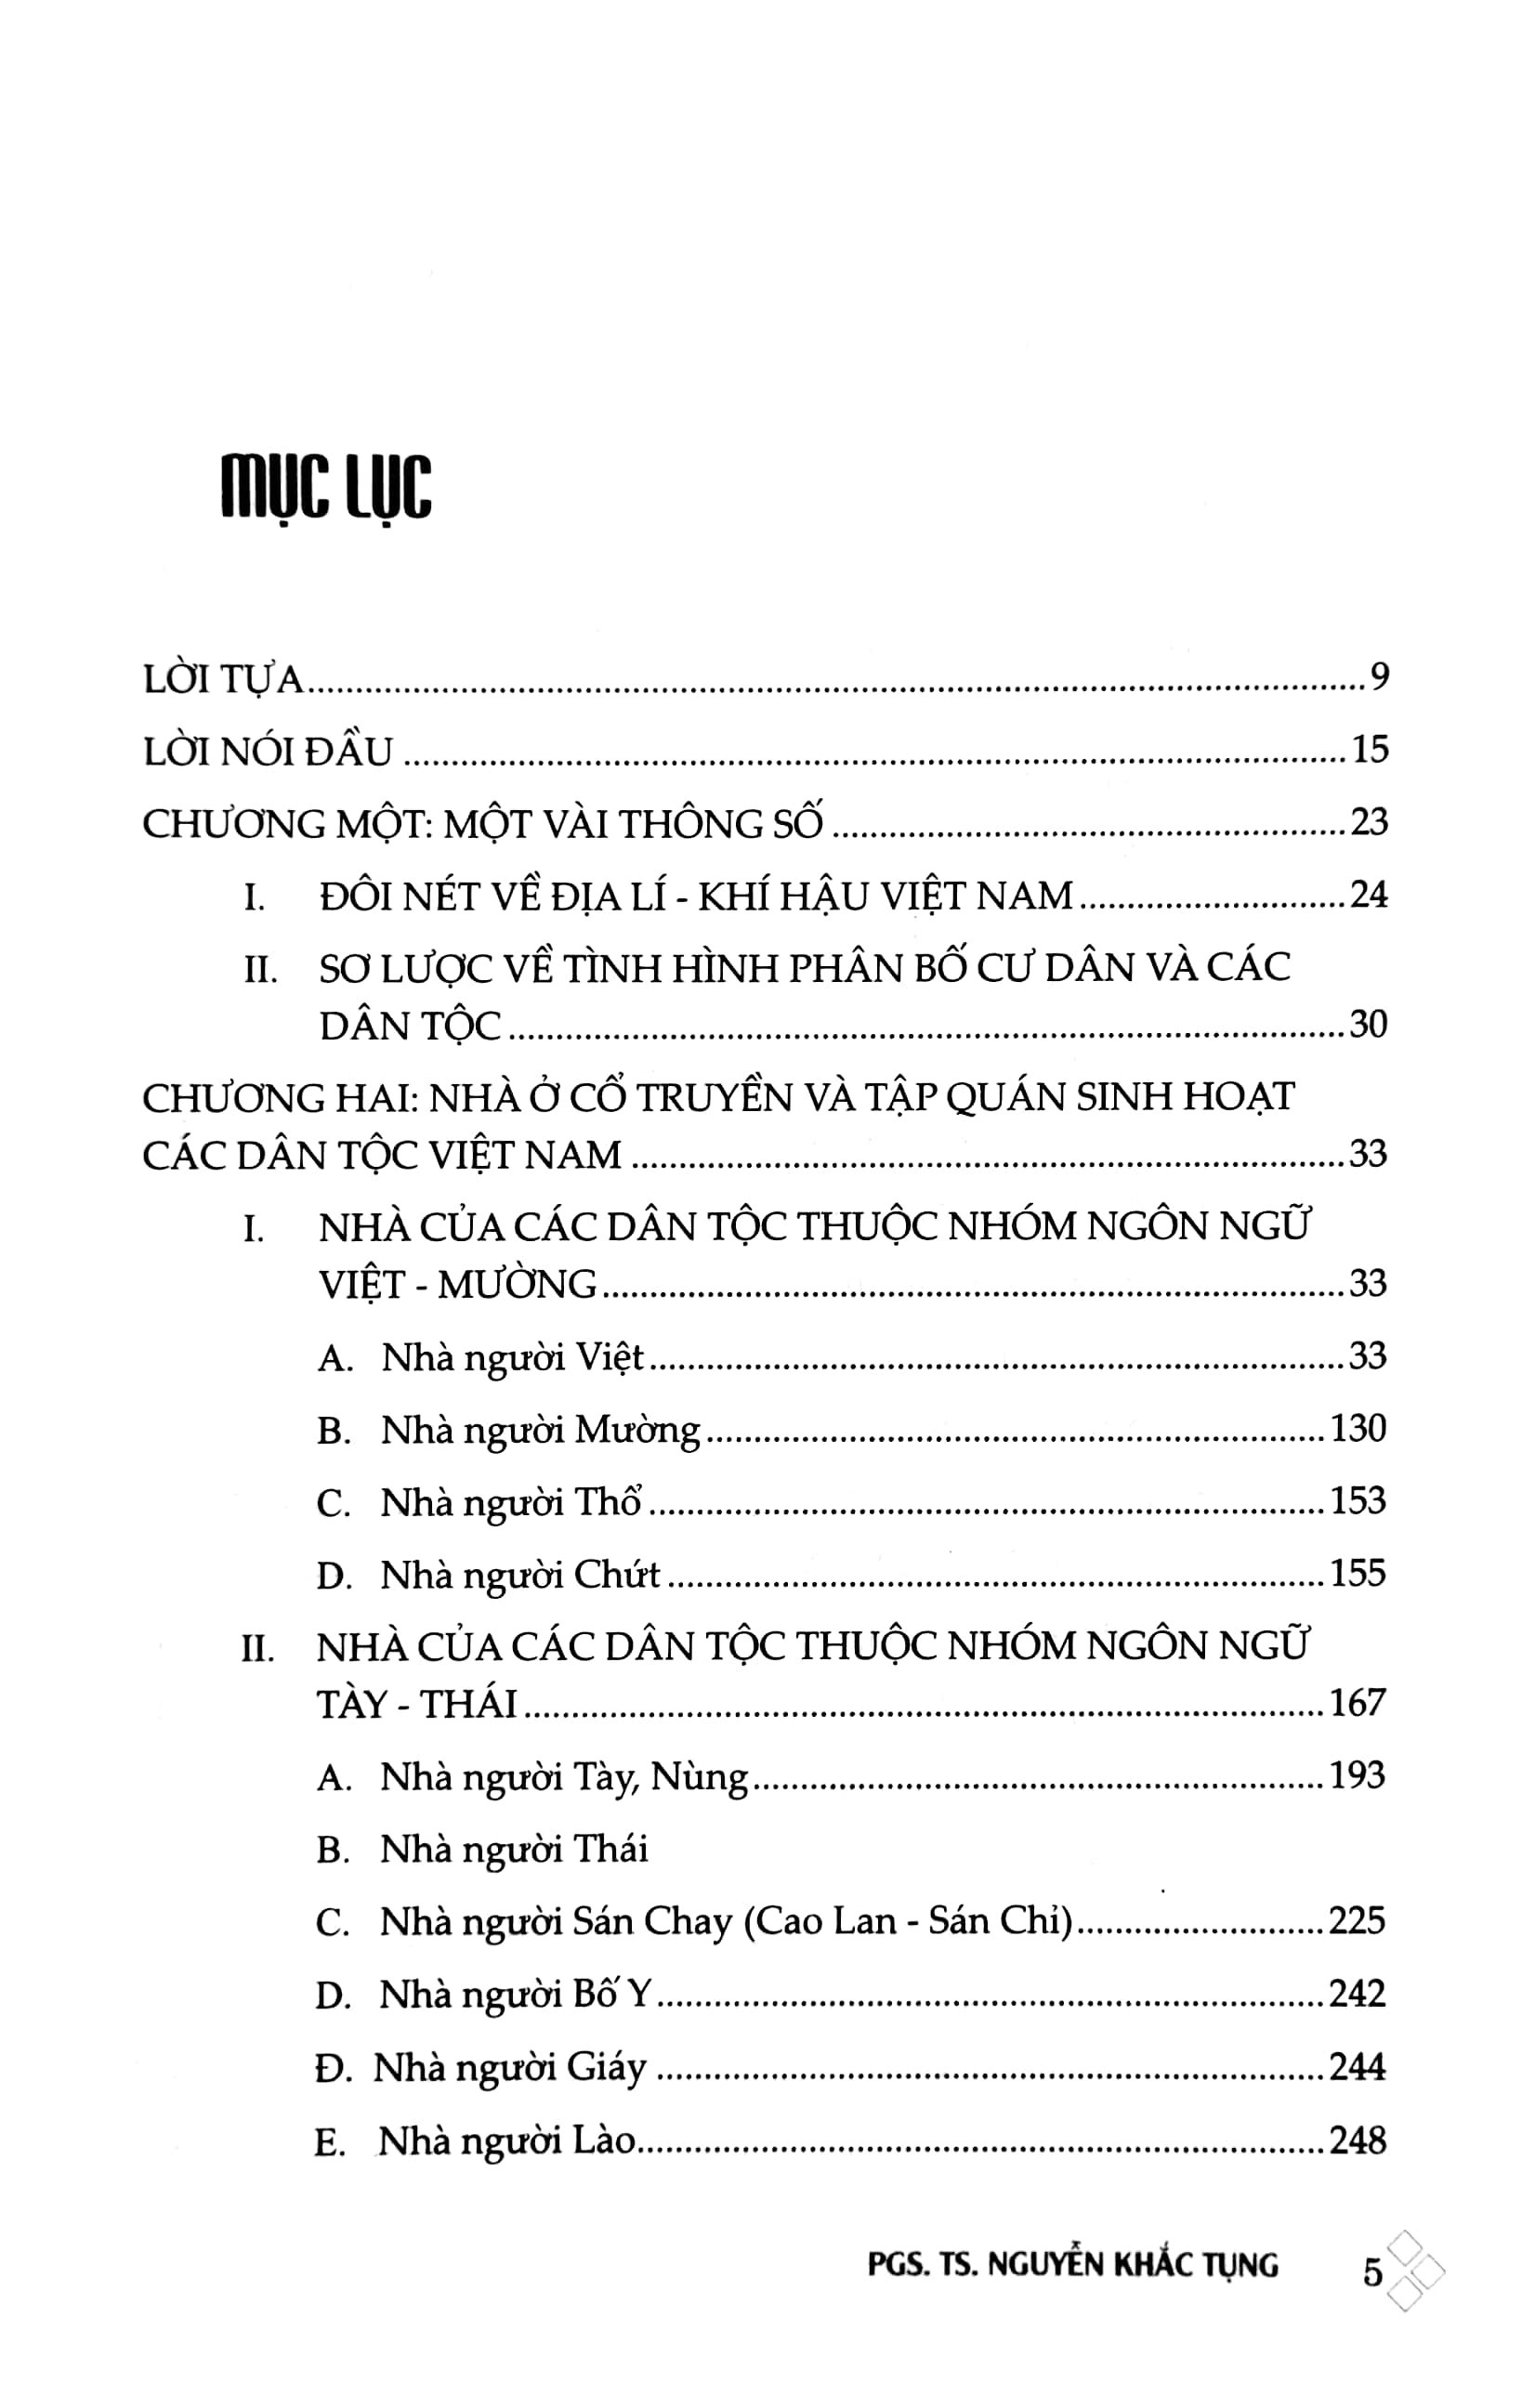 Nhà Ở Cổ Truyền Các Dân Tộc Việt Nam - Bìa Cứng PDF